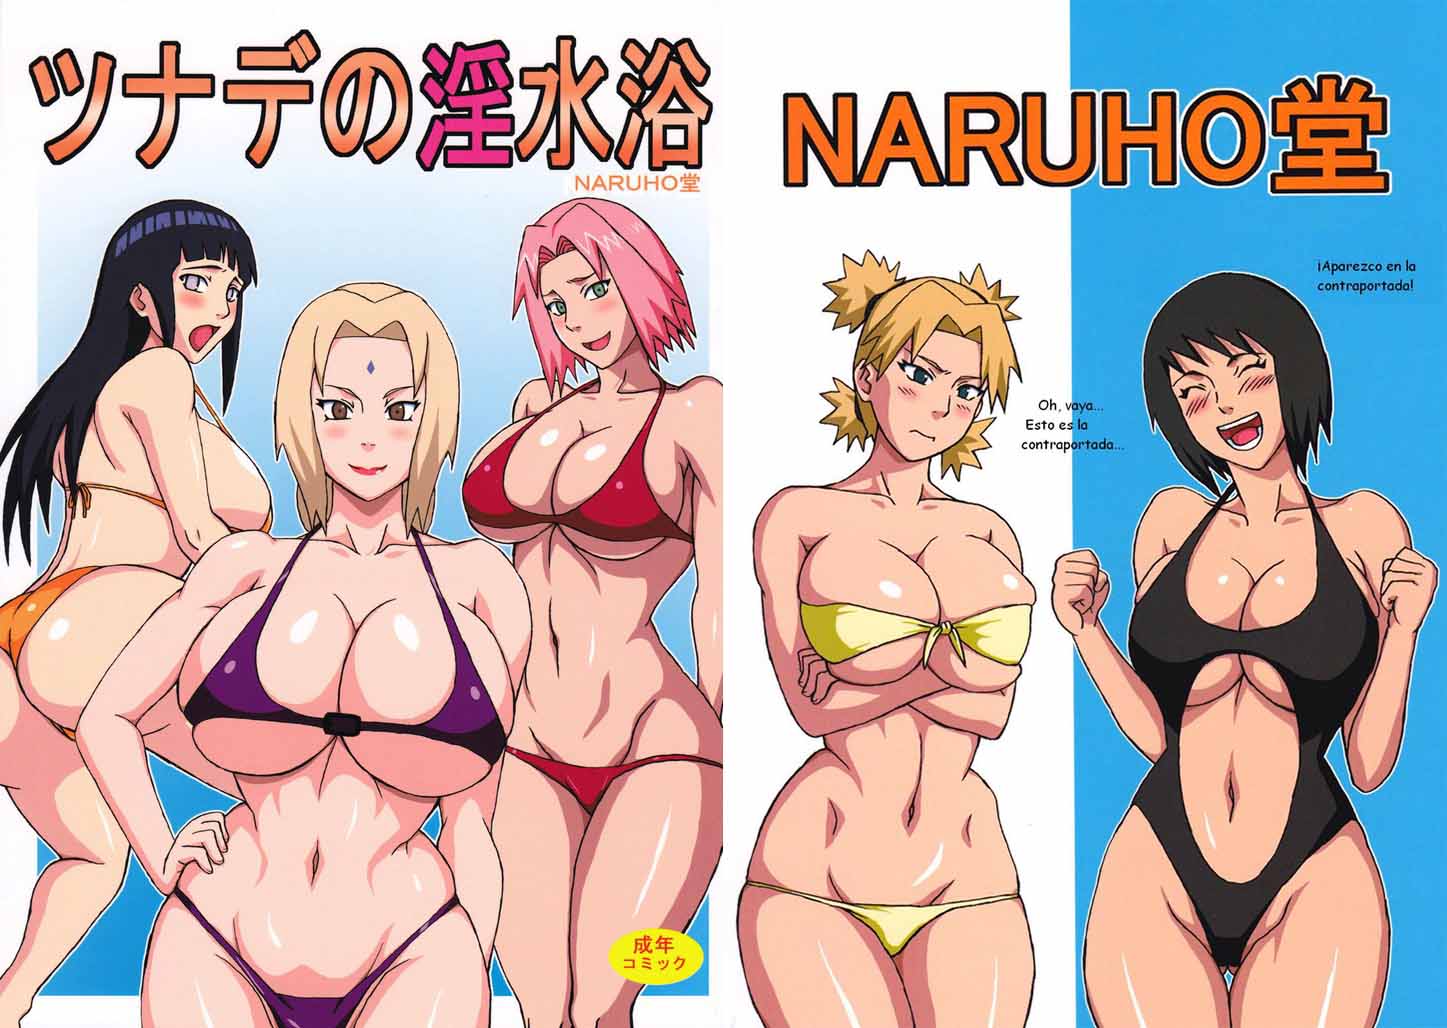 Naruto Comic Porn - Comic Porno Naruto Hinata Sakura desnudas